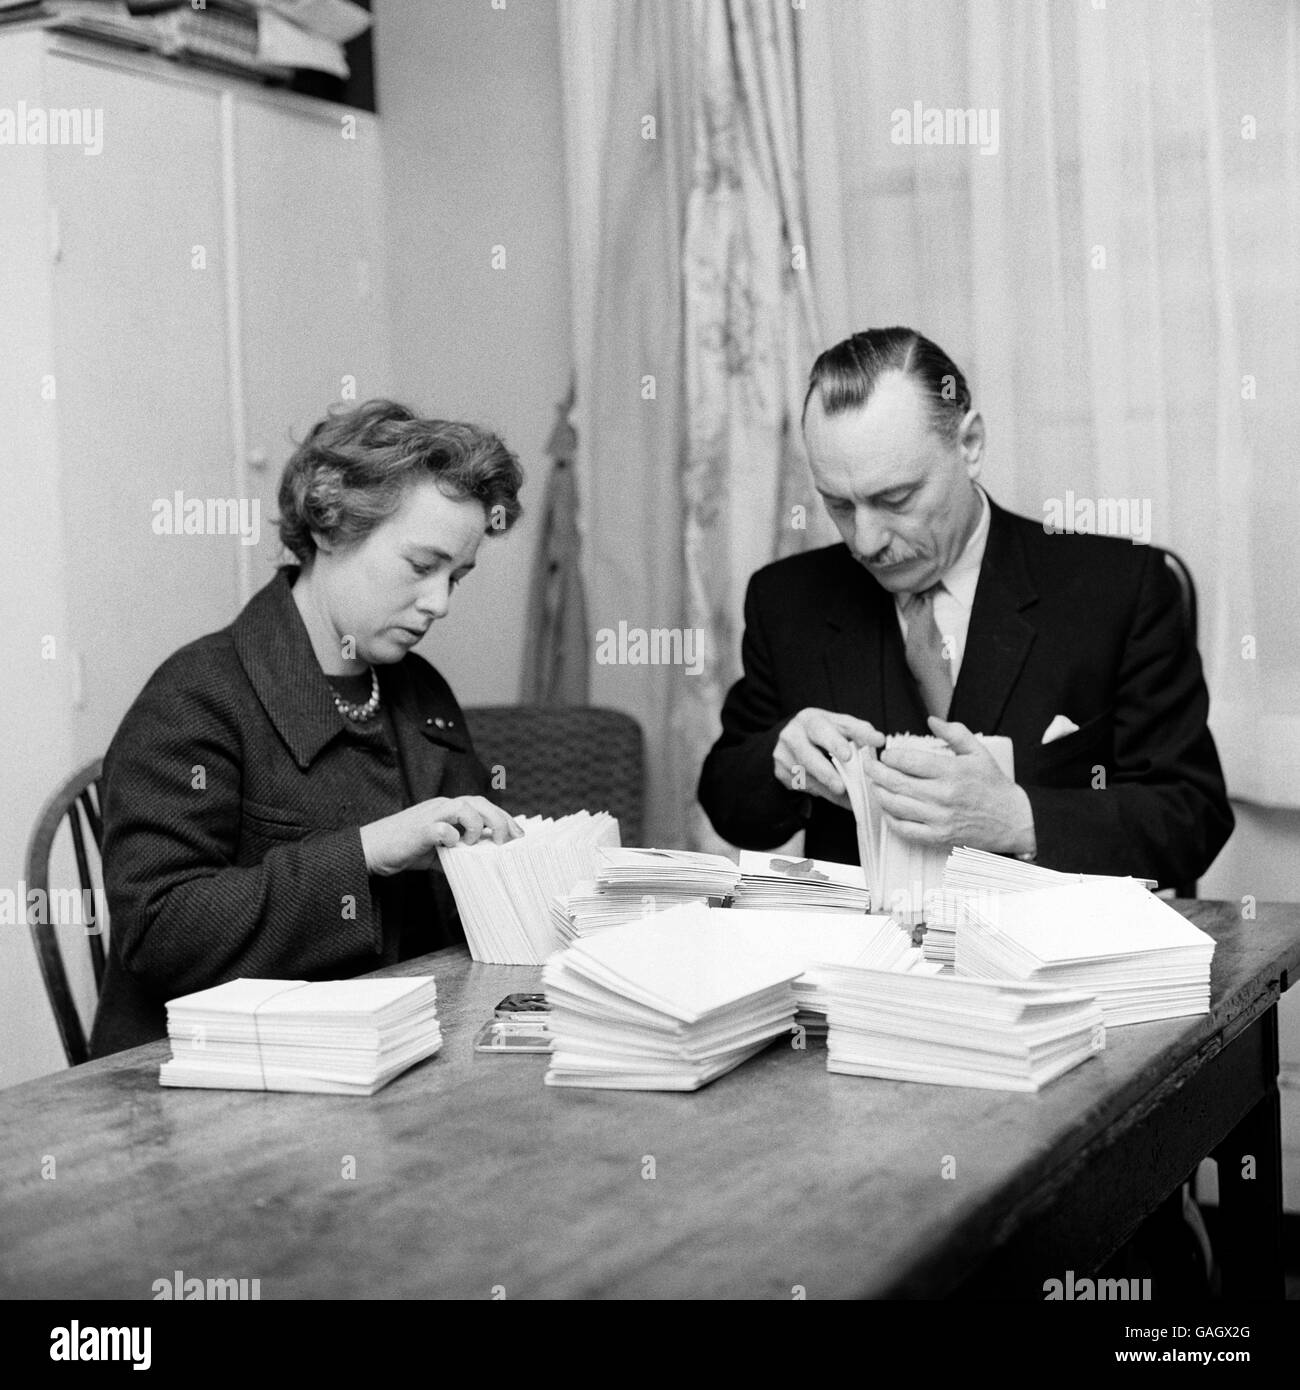 Enoch Powell, député Tory de Wolverhampton S.W., et son épouse Margaret, qui agit comme son secrétaire, trient certaines des 800 lettres qu'il a reçues après son discours d'immigration. Banque D'Images